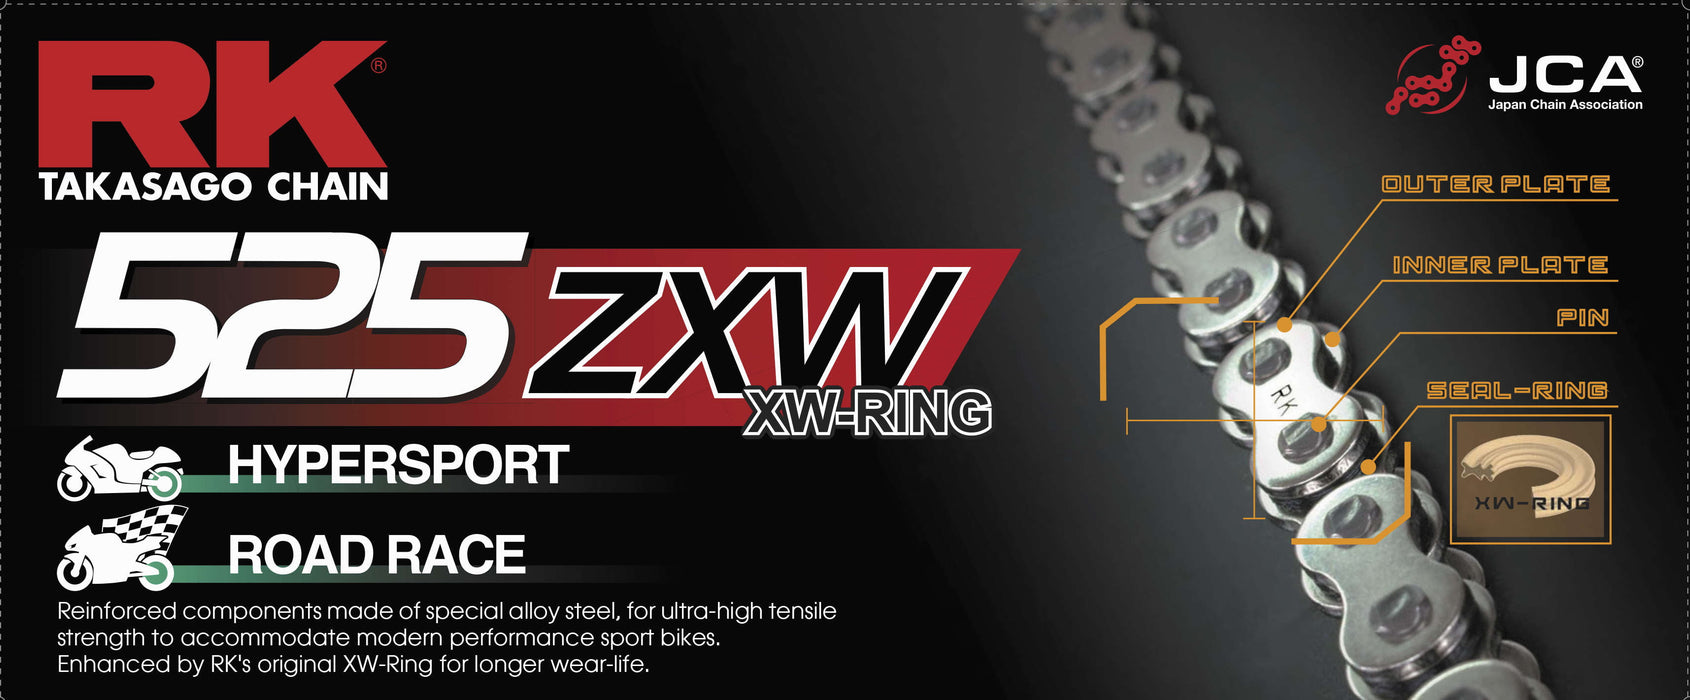 RK GB525ZXW-120 525 ZXW XW-Ring Chain - 120 Links - Gold